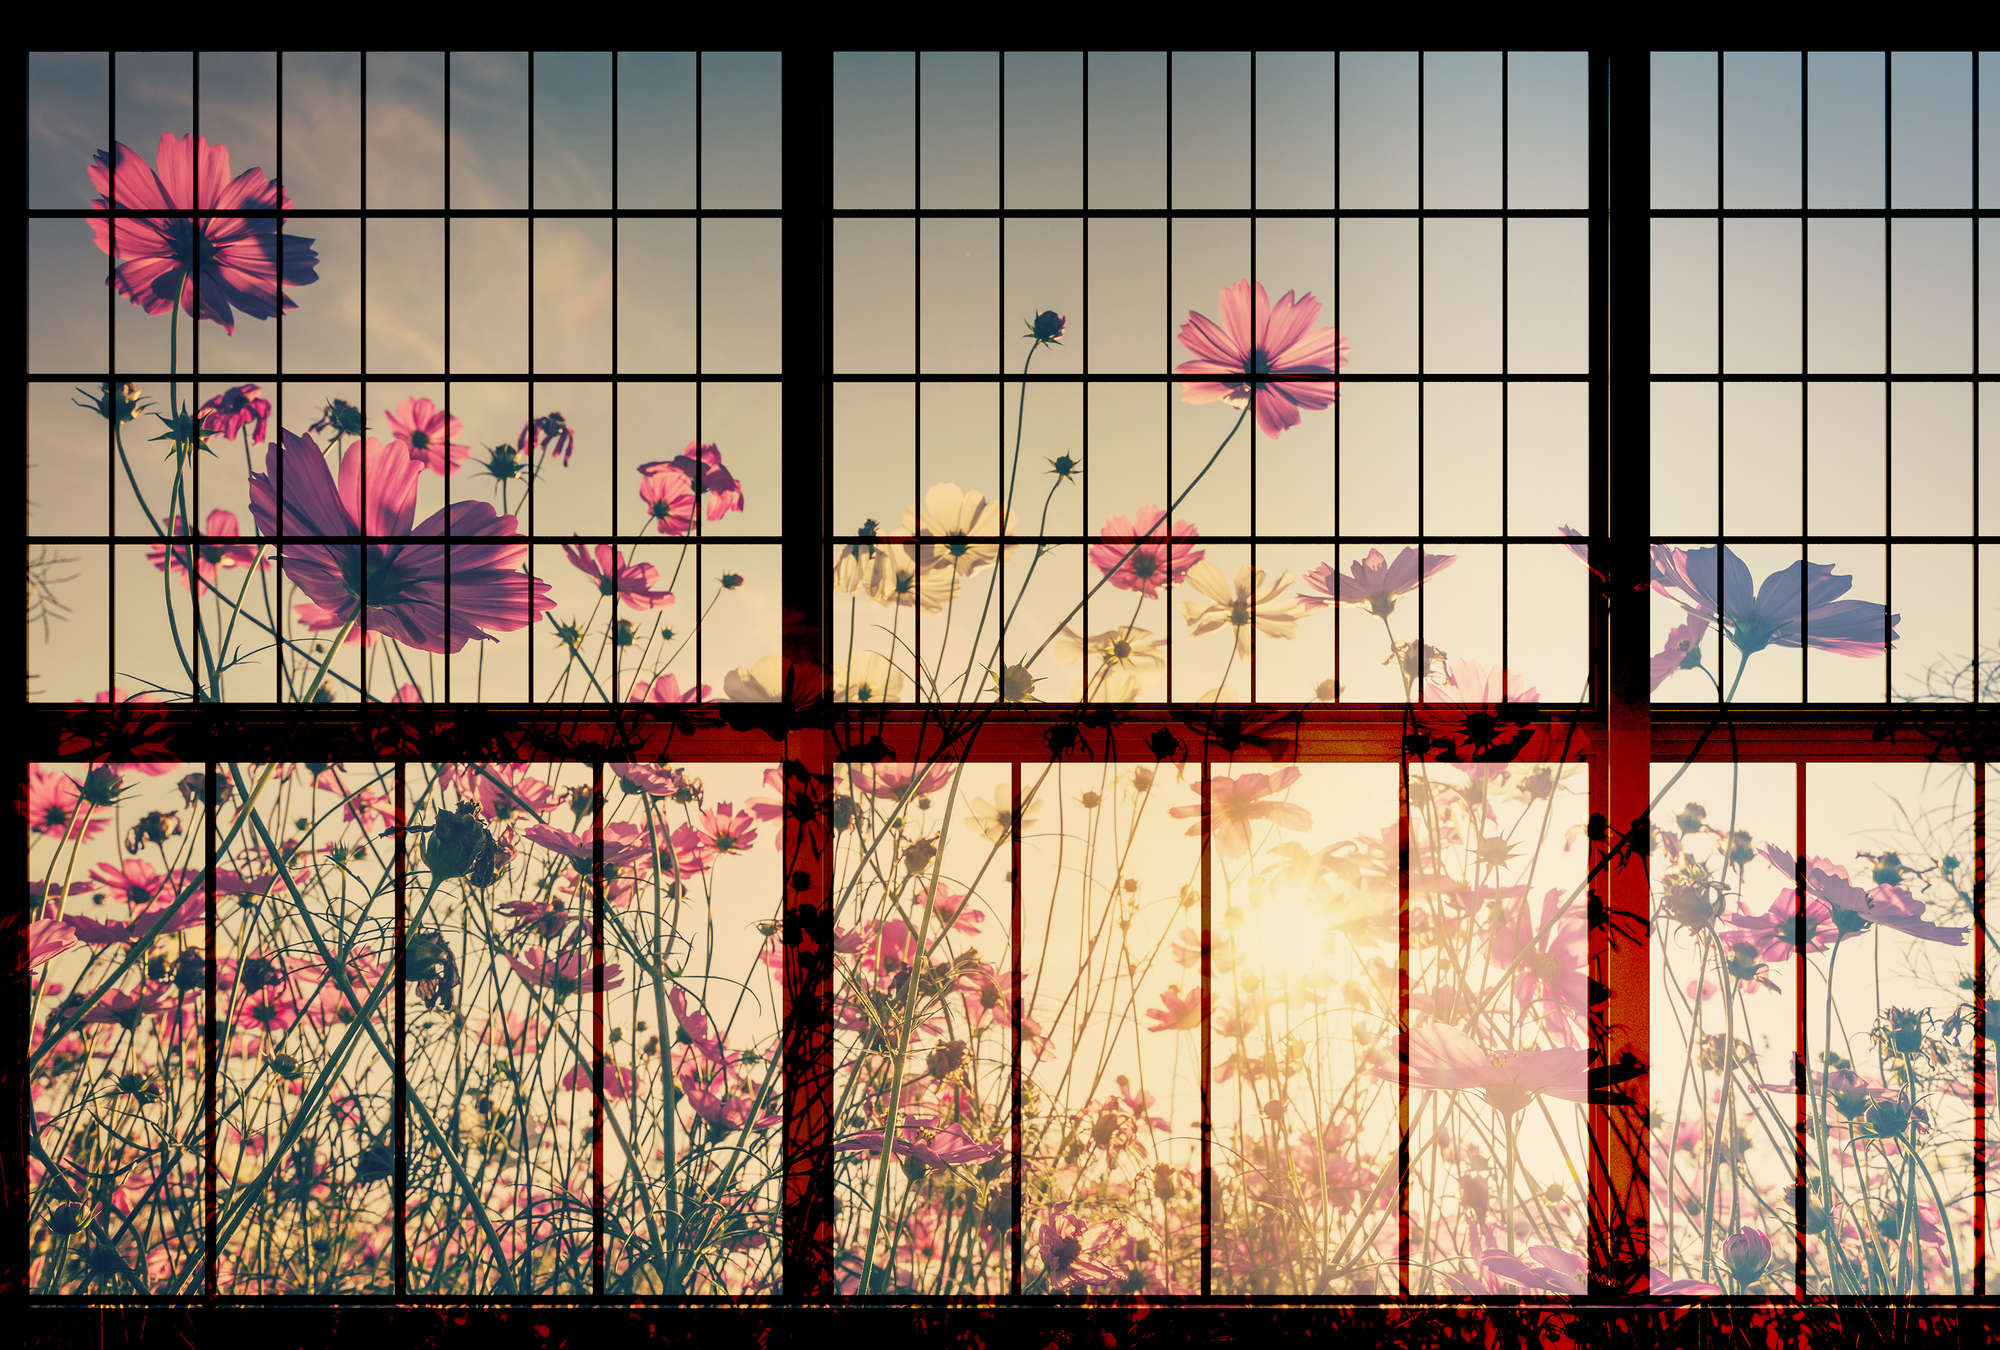             Meadow 1 - Sprossenfenster Fototapete mit Blumenwiese – Grün, Rosa | Mattes Glattvlies
        